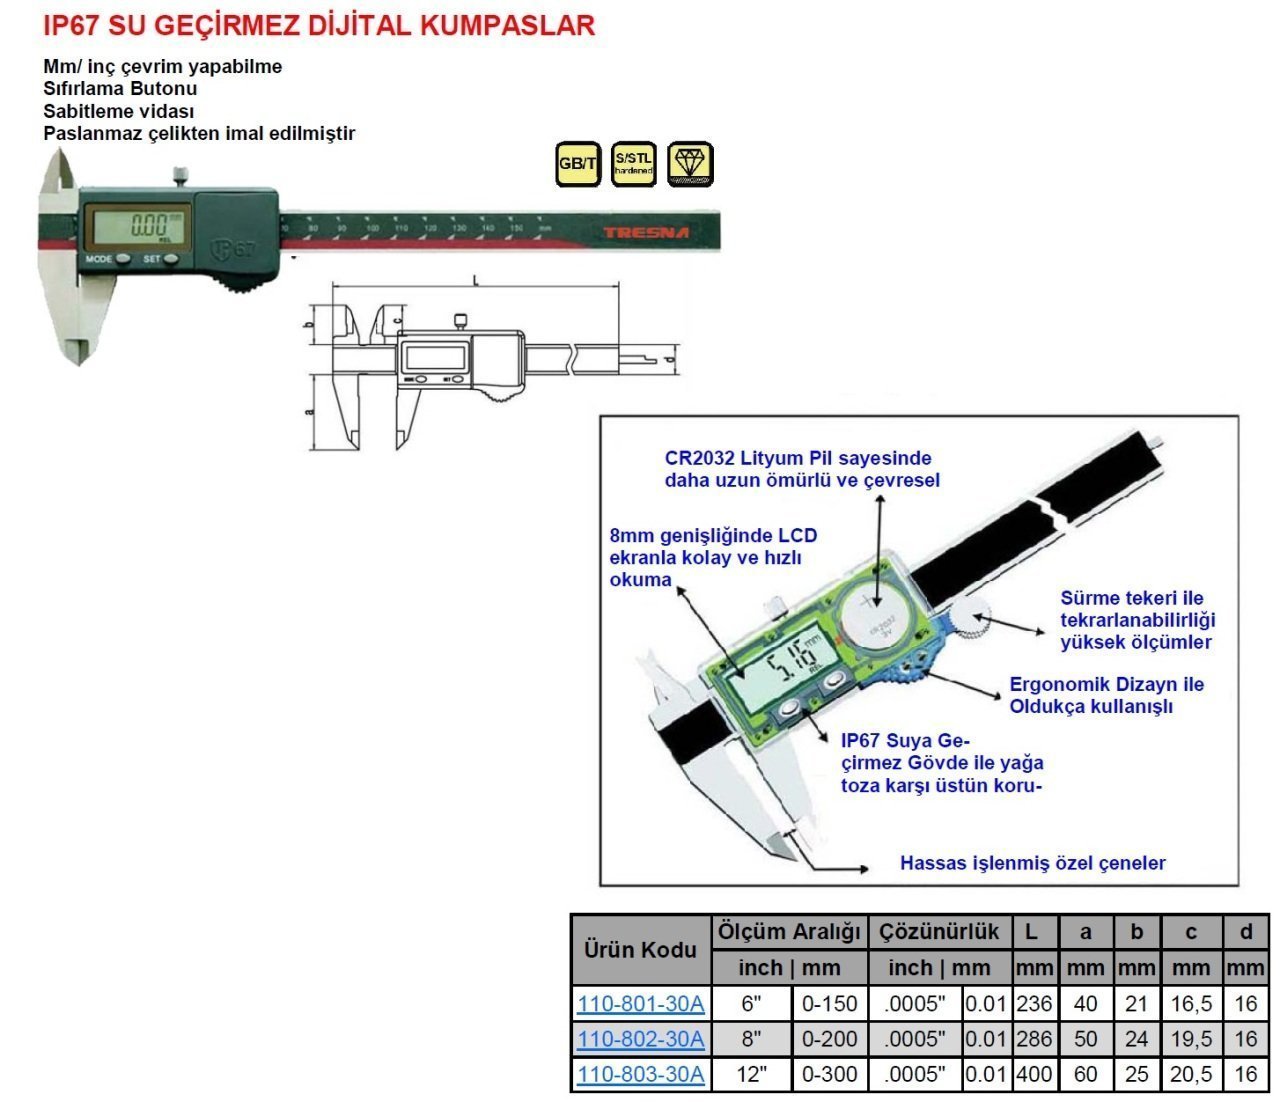 IP67 Su Geçirmez Dijital Kumpas 150mm